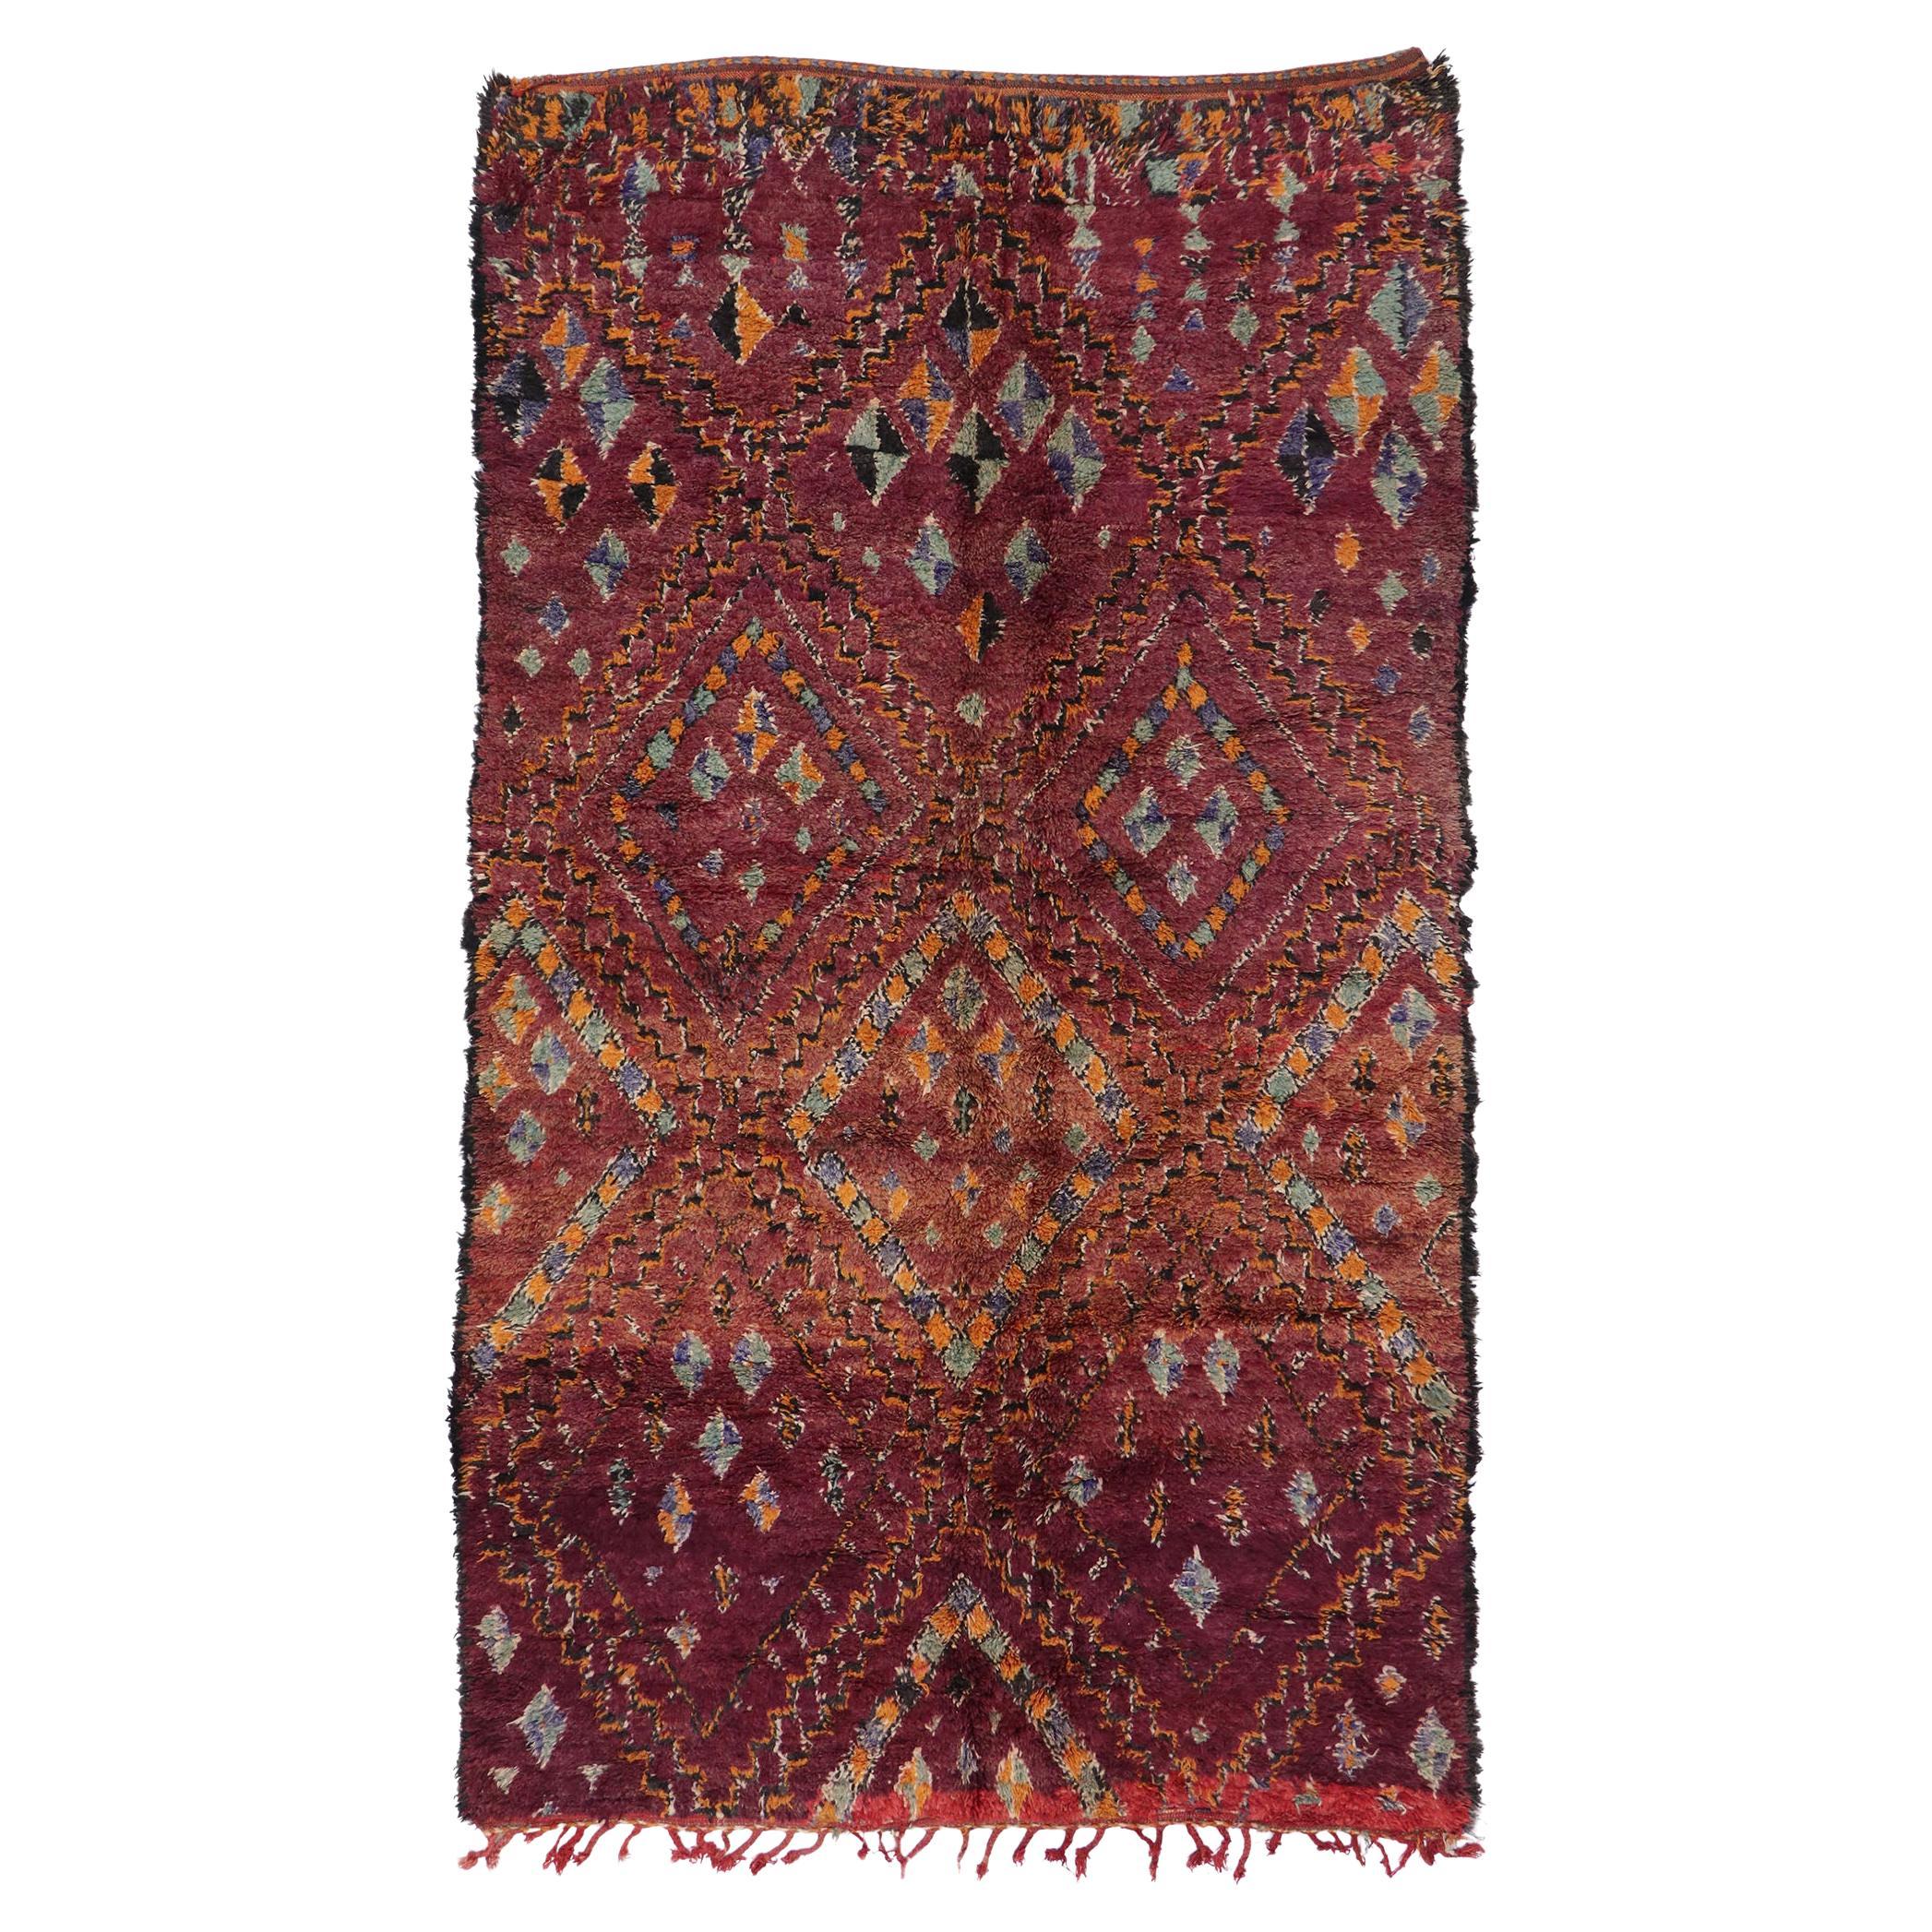 Vintage Beni MGuild Moroccan Rug, Nomadic Charm Meets Jungalow Boho For Sale